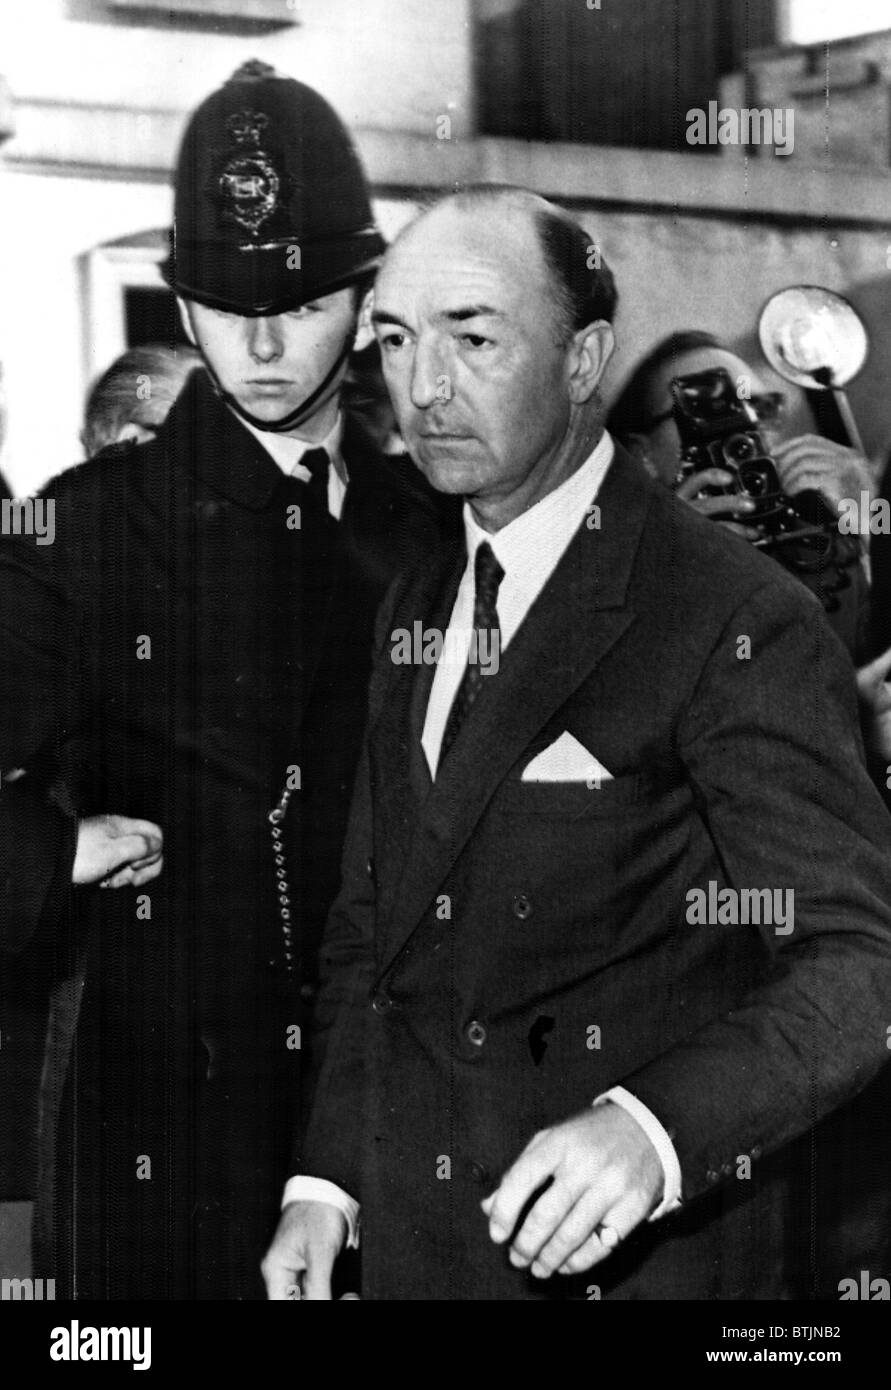 La ministre de la guerre, John Profumo retourne à la maison après avoir admis une liaison avec Christine Keeler, le 18 juin, 1963 Banque D'Images